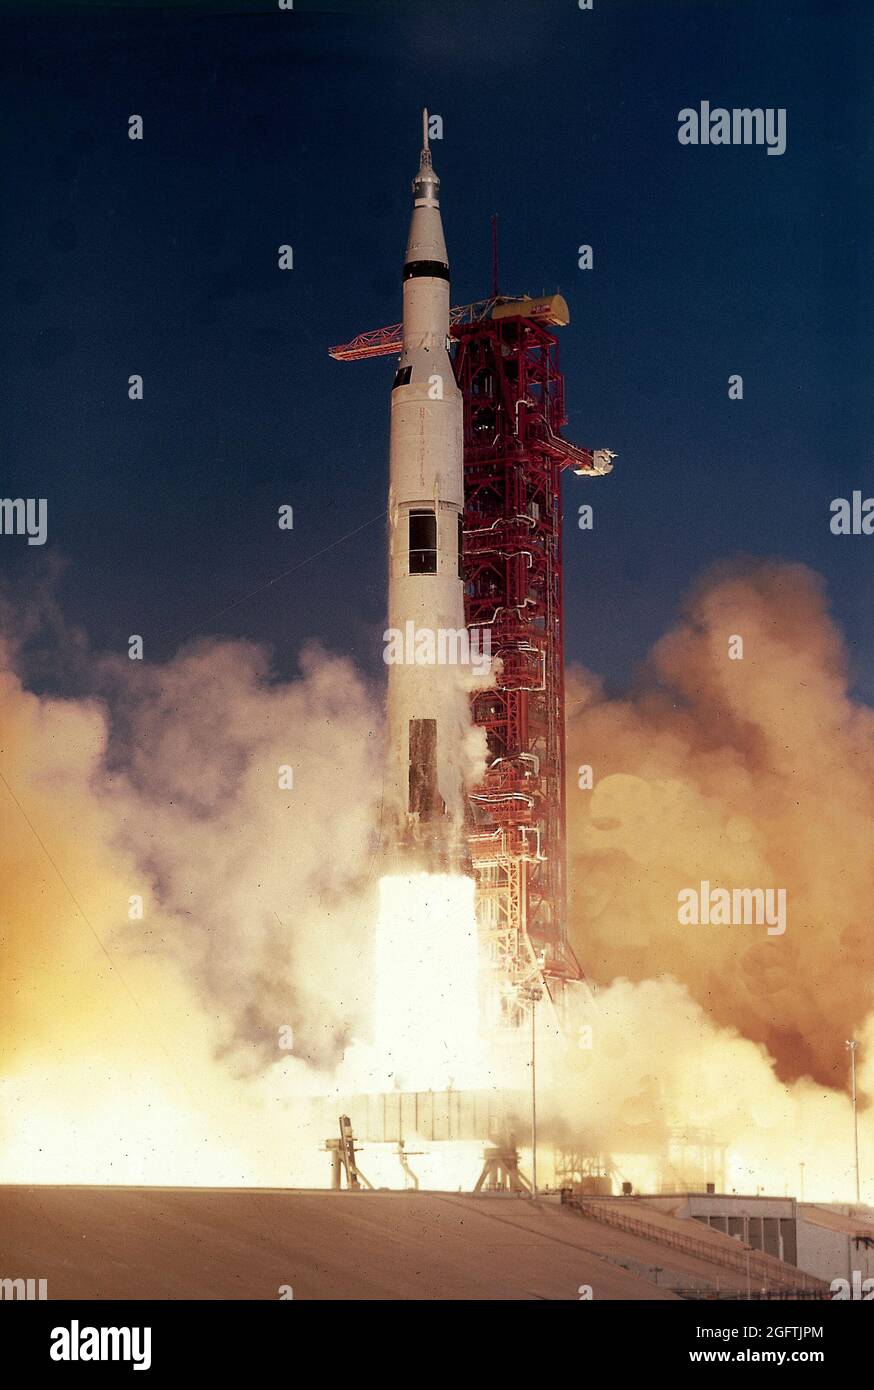 Am 21. Dezember 1968 hob das dritte Saturn-V-Trägerfahrzeug (SA-503) für die Apollo-8-Mission vom Launch Complex 39A im Kennedy Space Center ab. Das erste bemannte Saturn-V-Fahrzeug mit einer Besatzung von drei Astronauten, Frank Borman, James A. Lovell, Jr. und William anders, Entkam der Schwerkraft der Erde, reiste in die Mondumgebung und umkreiste den Mond Stockfoto